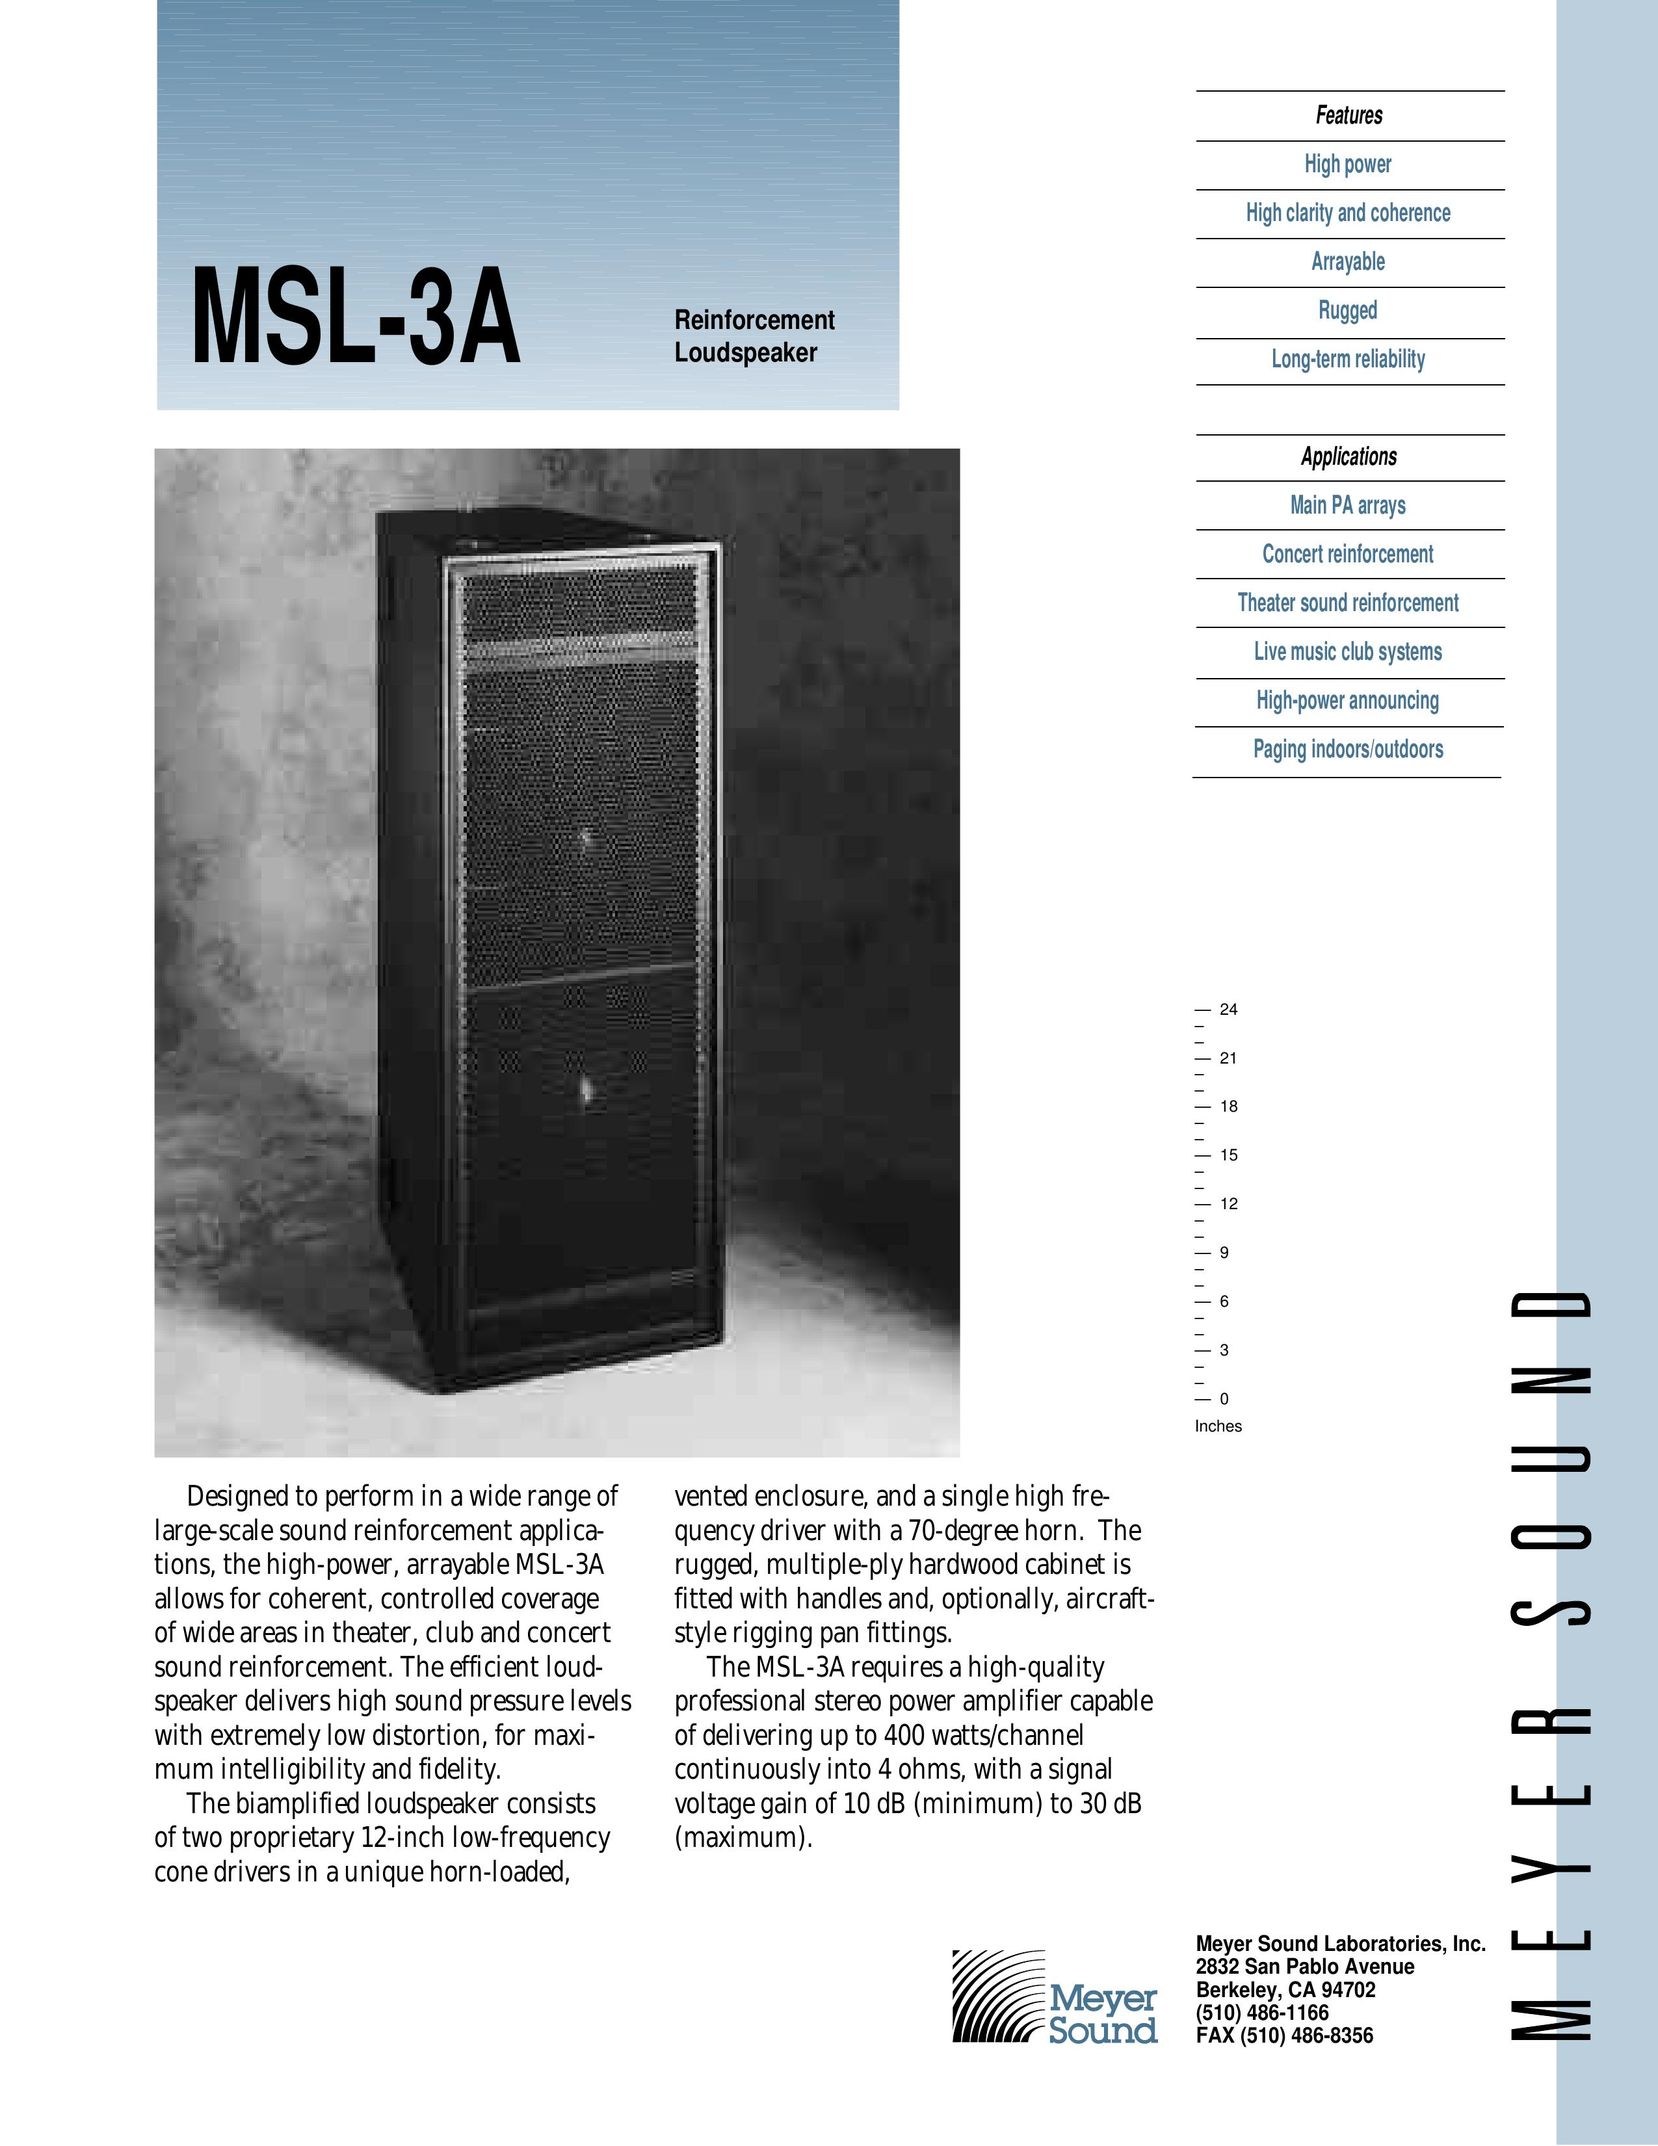 Meyer Sound MSL-3A Portable Speaker User Manual